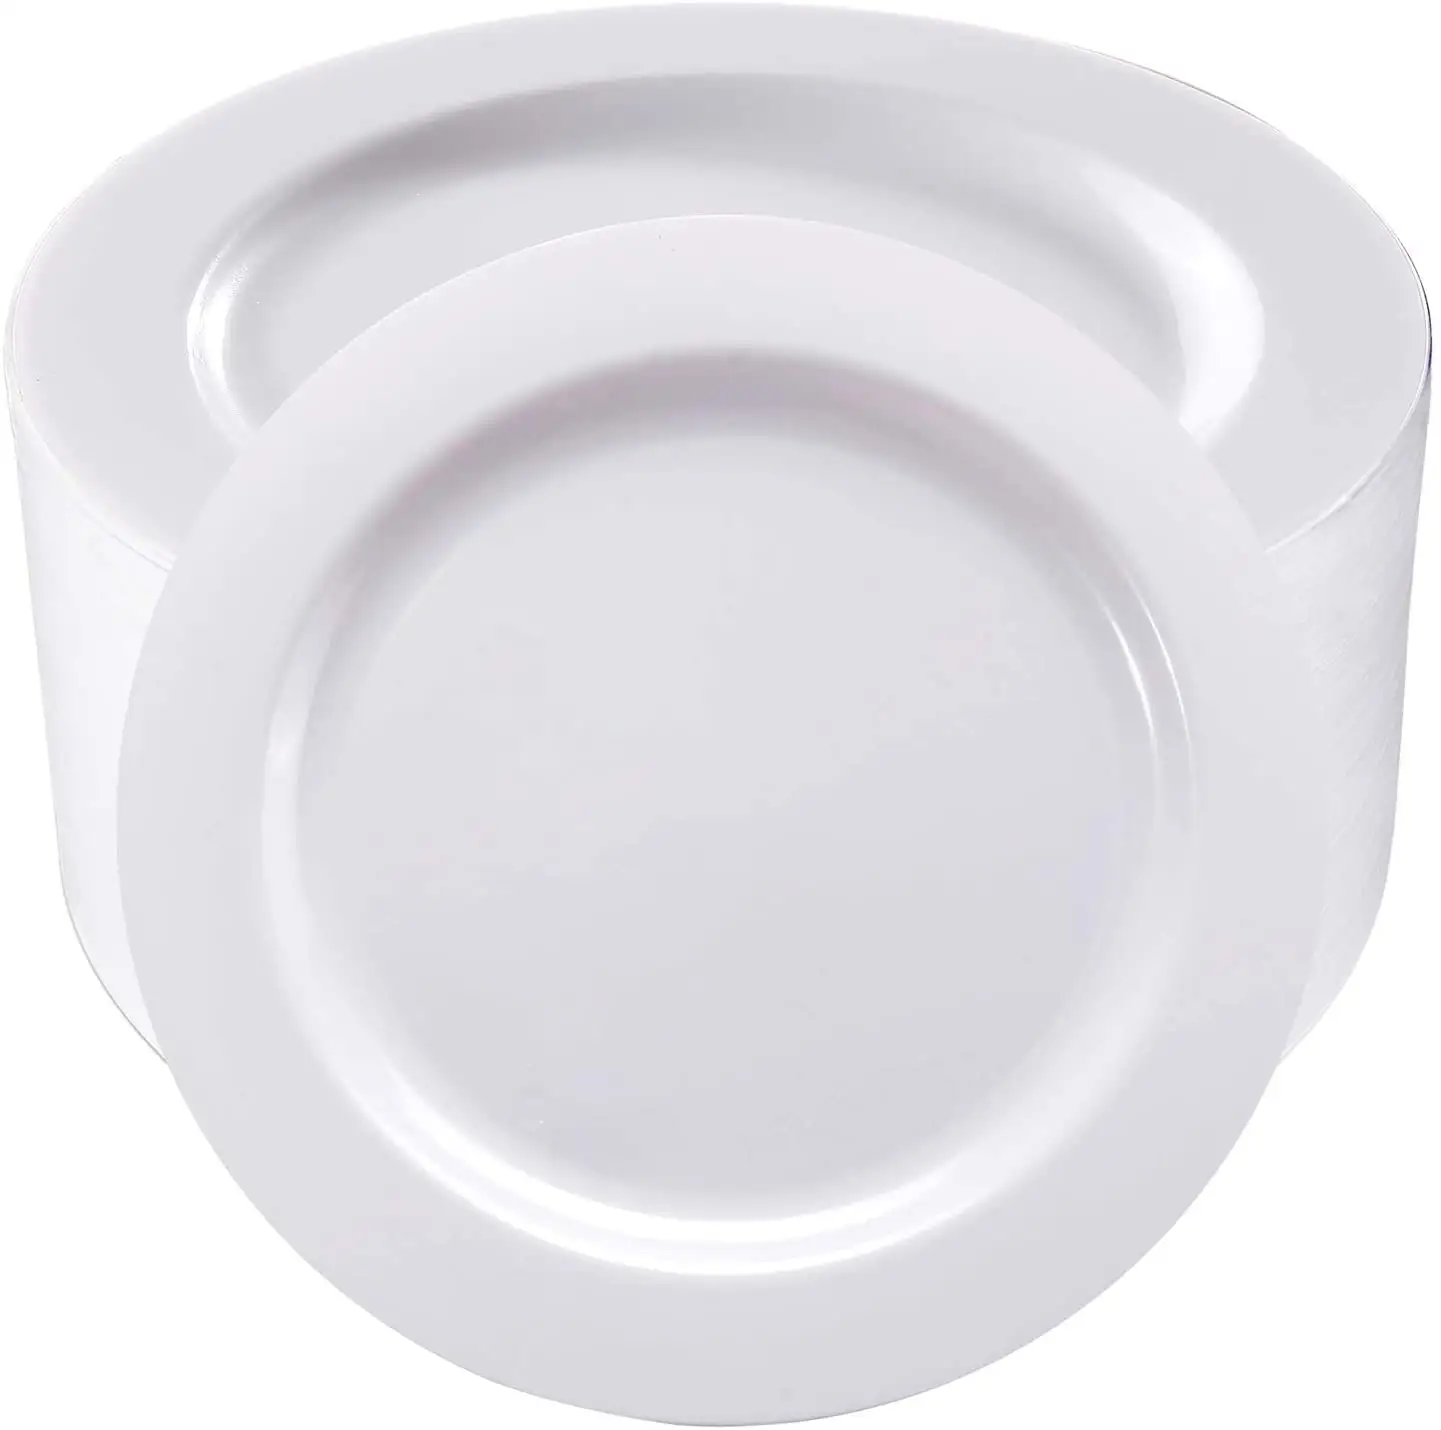 Platos de cena de plástico blanco, platos desechables Premium de 12 pulgadas y 13 pulgadas